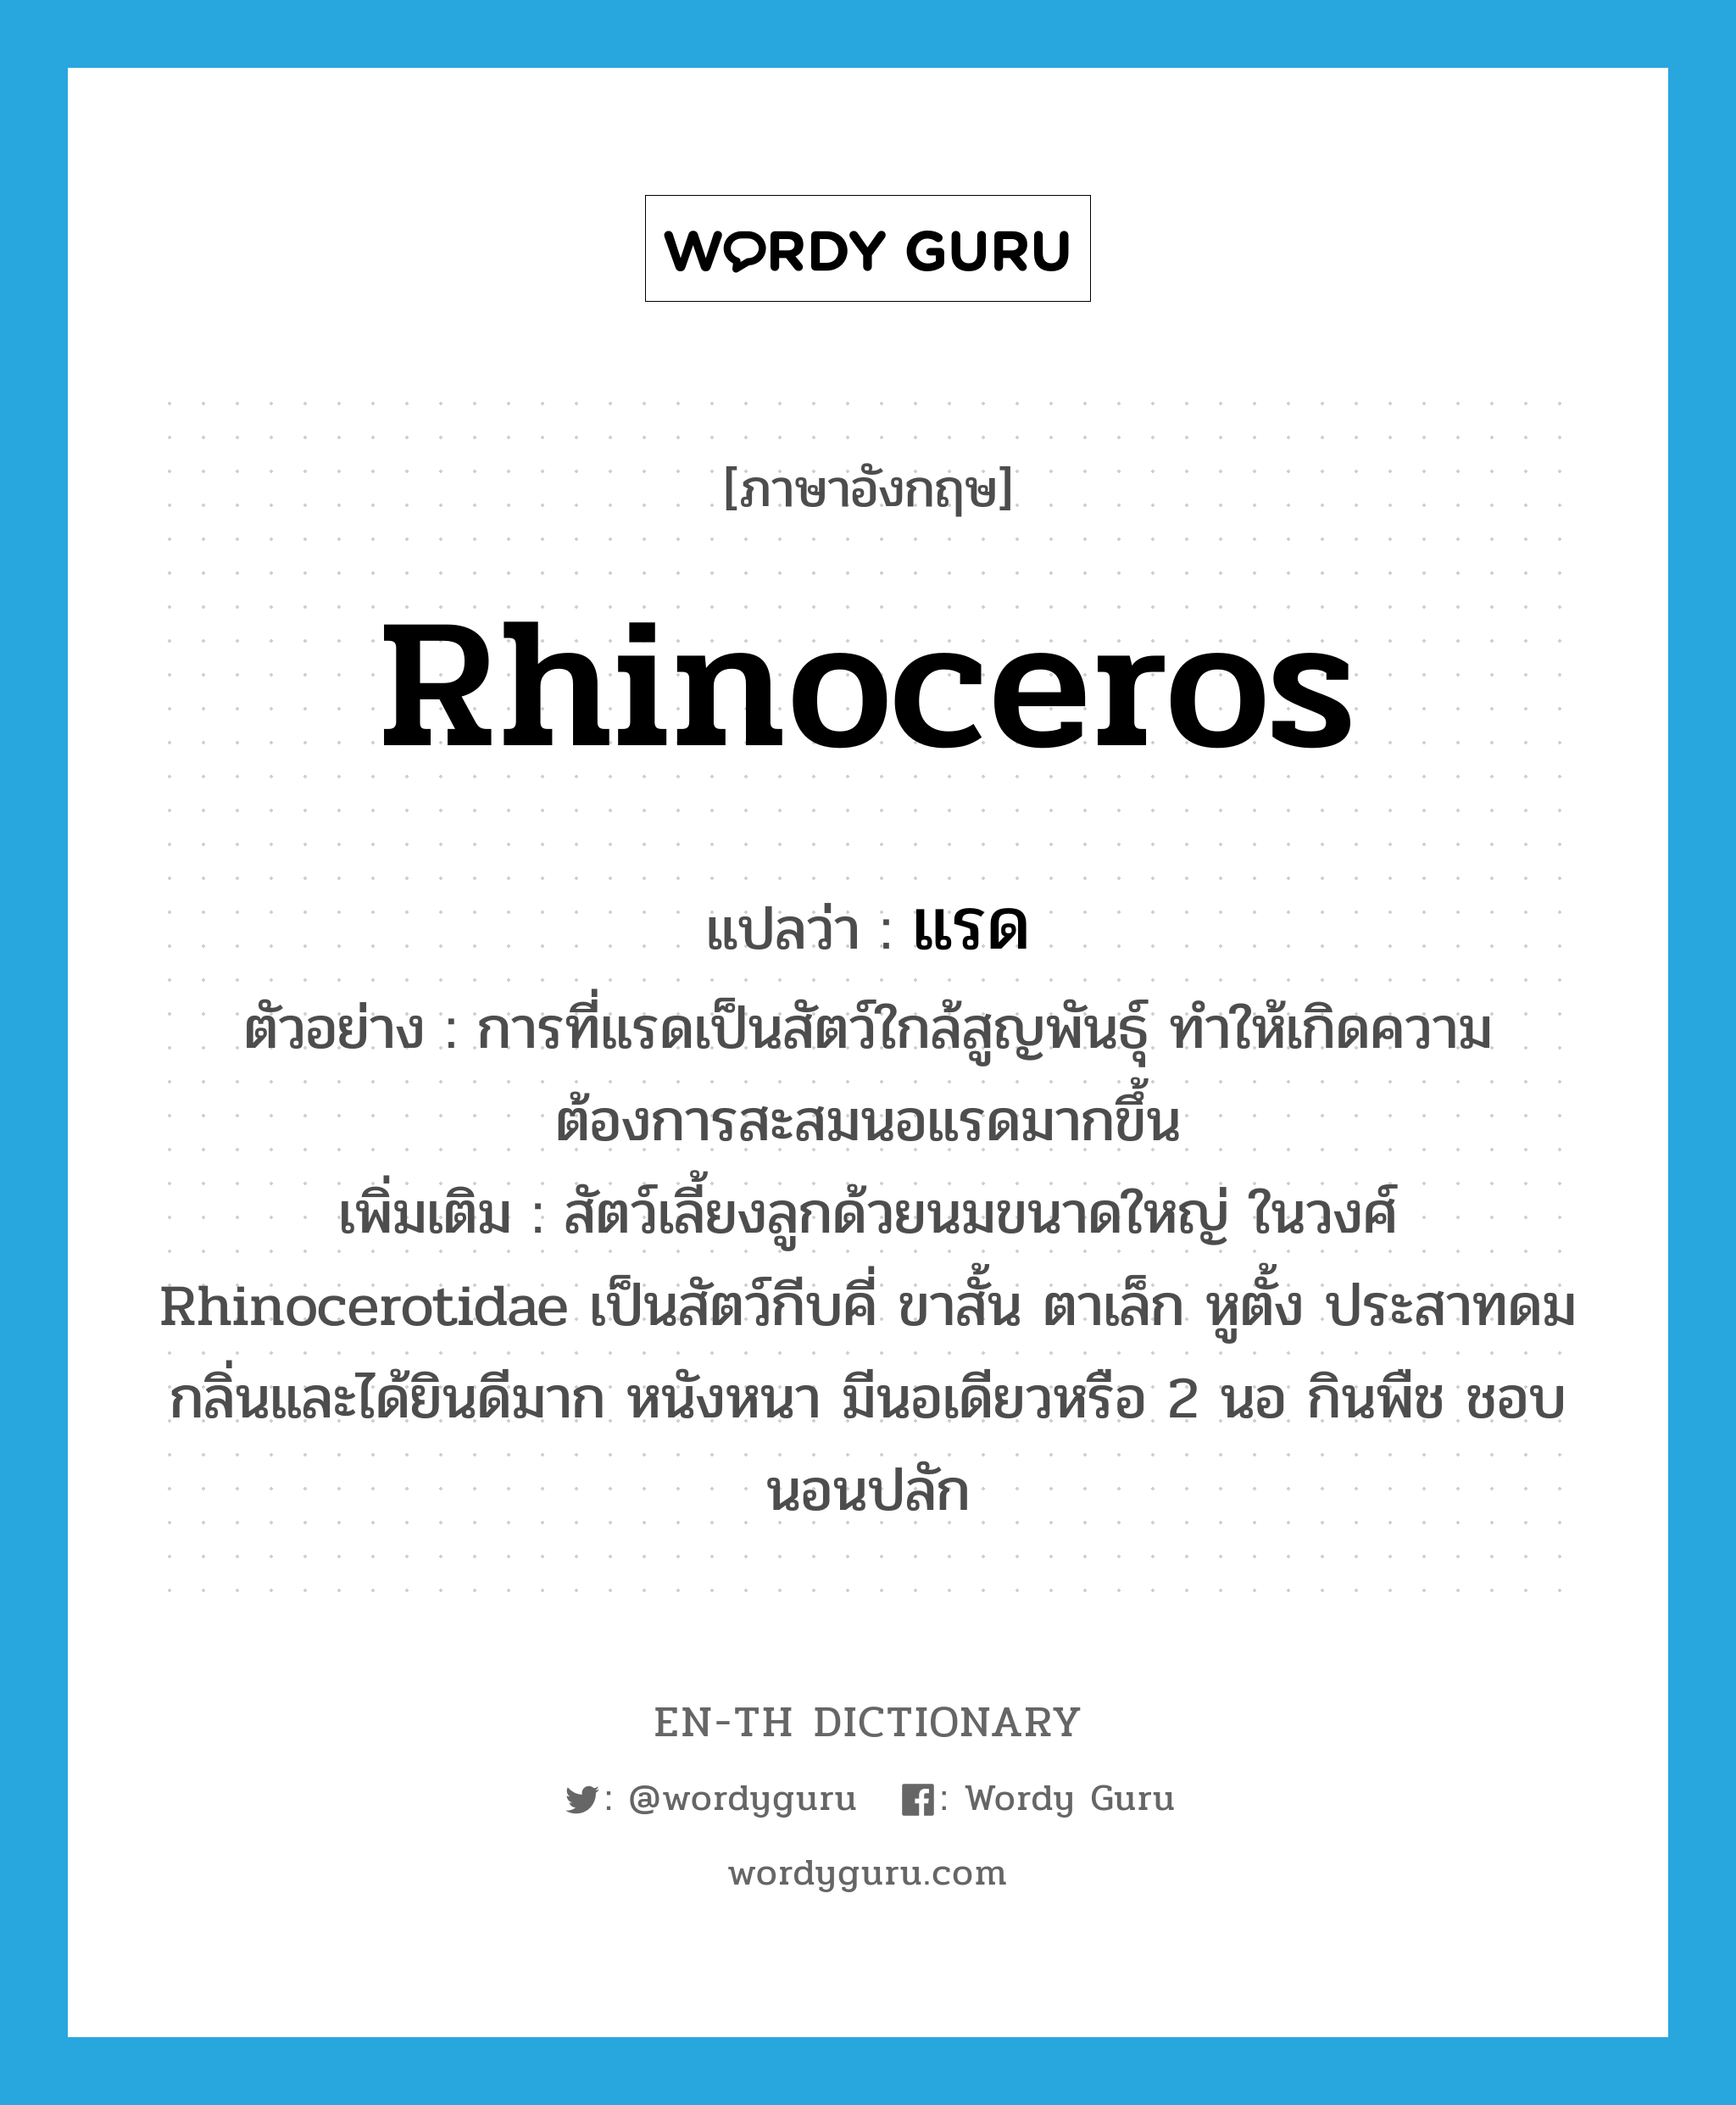 rhinoceros แปลว่า?, คำศัพท์ภาษาอังกฤษ rhinoceros แปลว่า แรด ประเภท N ตัวอย่าง การที่แรดเป็นสัตว์ใกล้สูญพันธุ์ ทำให้เกิดความต้องการสะสมนอแรดมากขึ้น เพิ่มเติม สัตว์เลี้ยงลูกด้วยนมขนาดใหญ่ ในวงศ์ Rhinocerotidae เป็นสัตว์กีบคี่ ขาสั้น ตาเล็ก หูตั้ง ประสาทดมกลิ่นและได้ยินดีมาก หนังหนา มีนอเดียวหรือ 2 นอ กินพืช ชอบนอนปลัก หมวด N